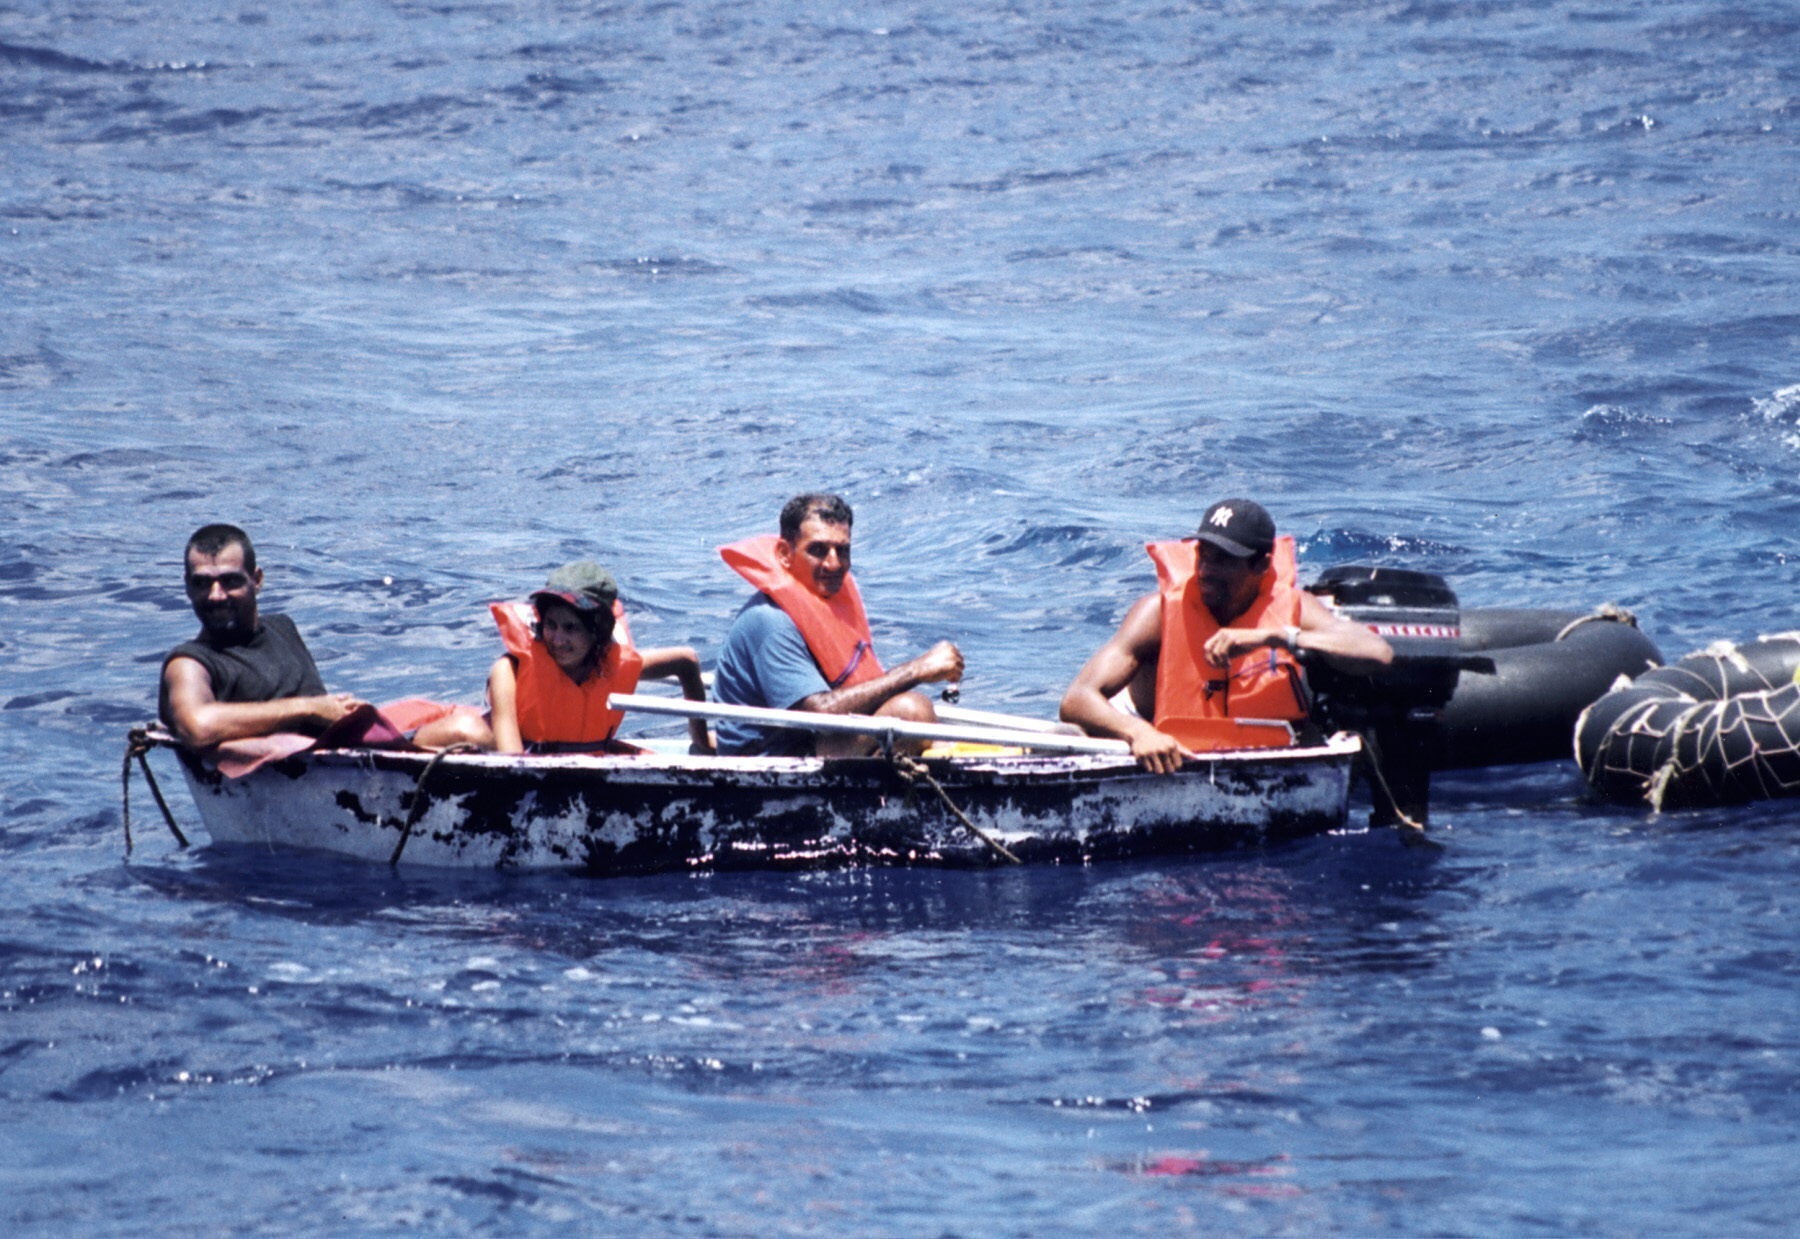 Foto de archivo de un grupo de migrantes cubanos llegando a las costas de Florida en un bote (Foto: EFE)